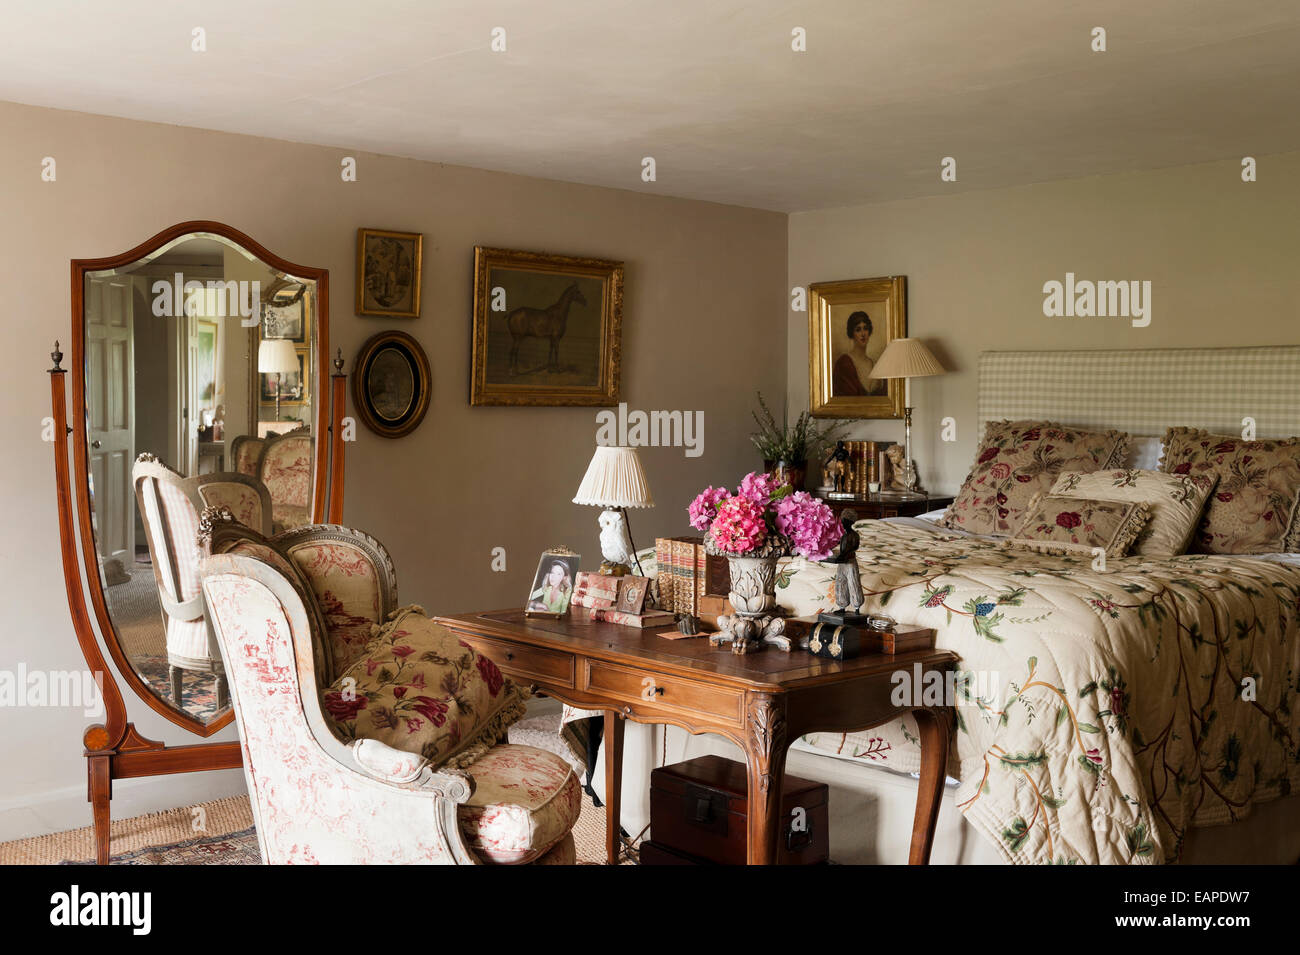 La couture coussins sur le lit avec Chelsea Textiles quilt floral dans la chambre avec un fauteuil recouvert de toile de jouy Banque D'Images